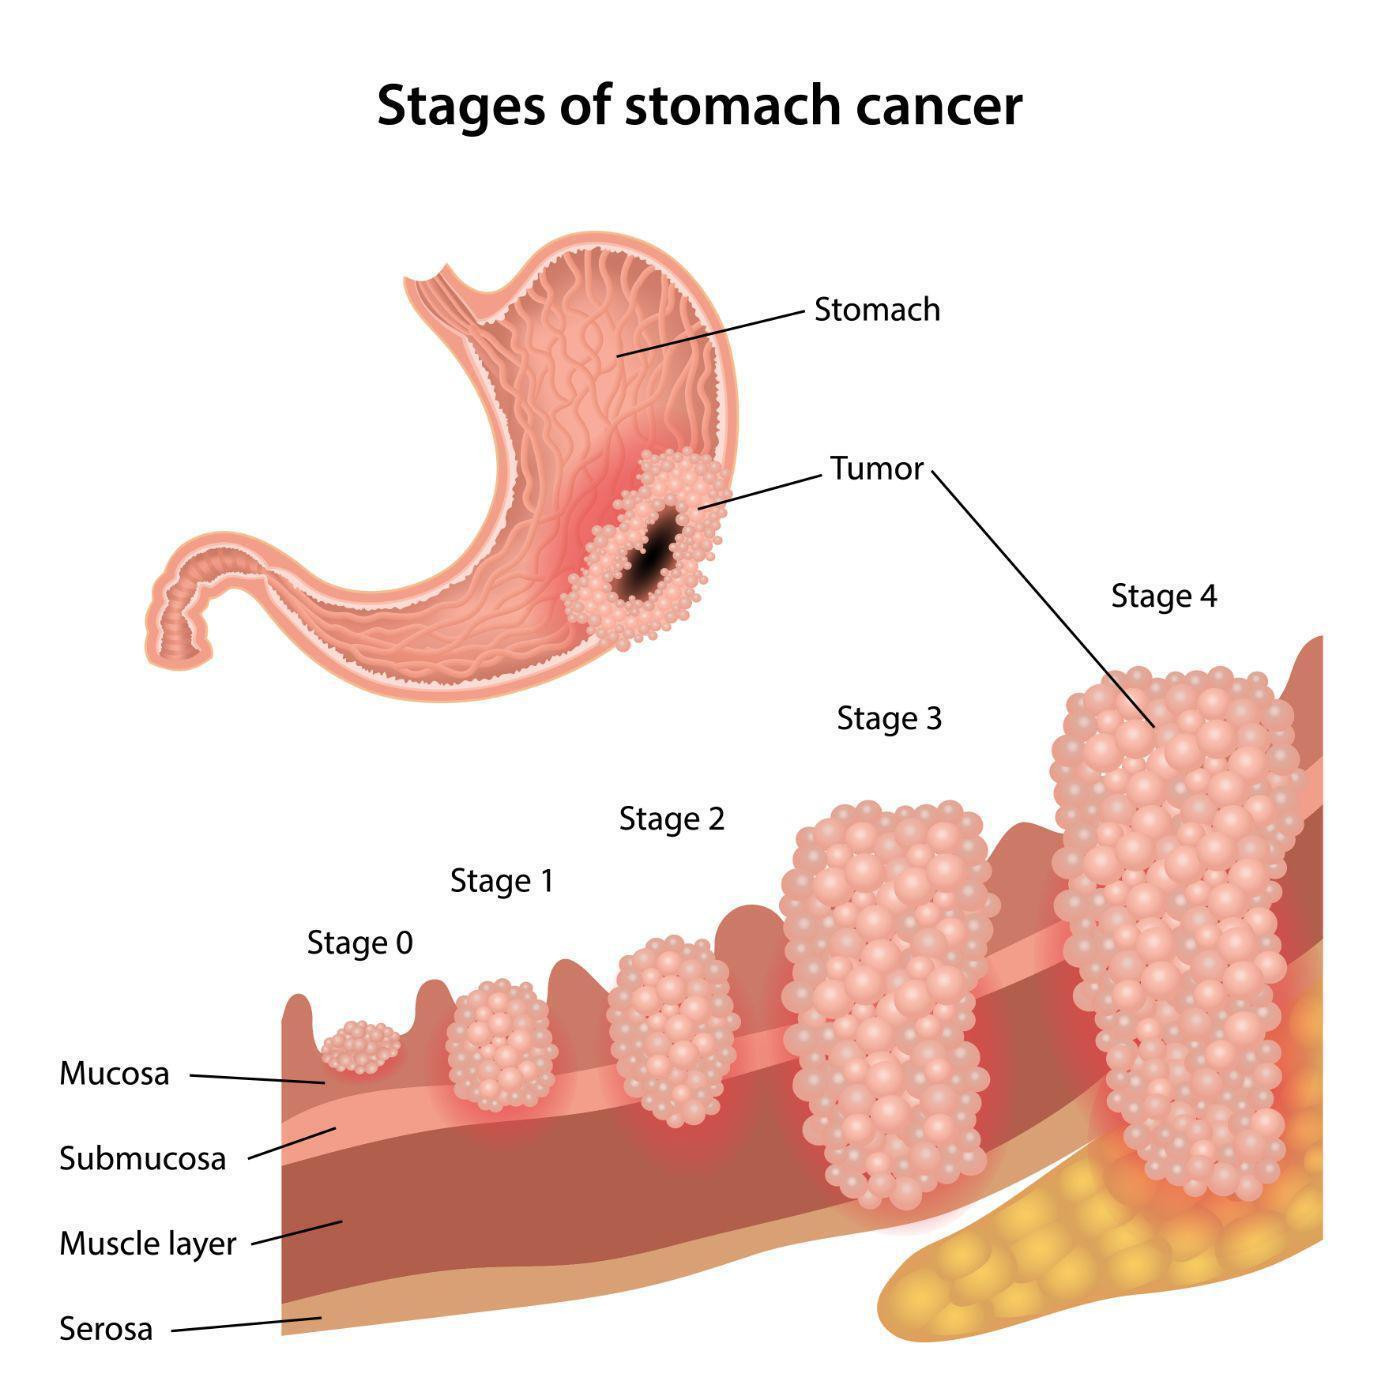 Ung thư dạ dày: 4 dấu hiệu sau khi ăn cảnh báo bệnh đã âm thầm tấn công cơ thể - 2